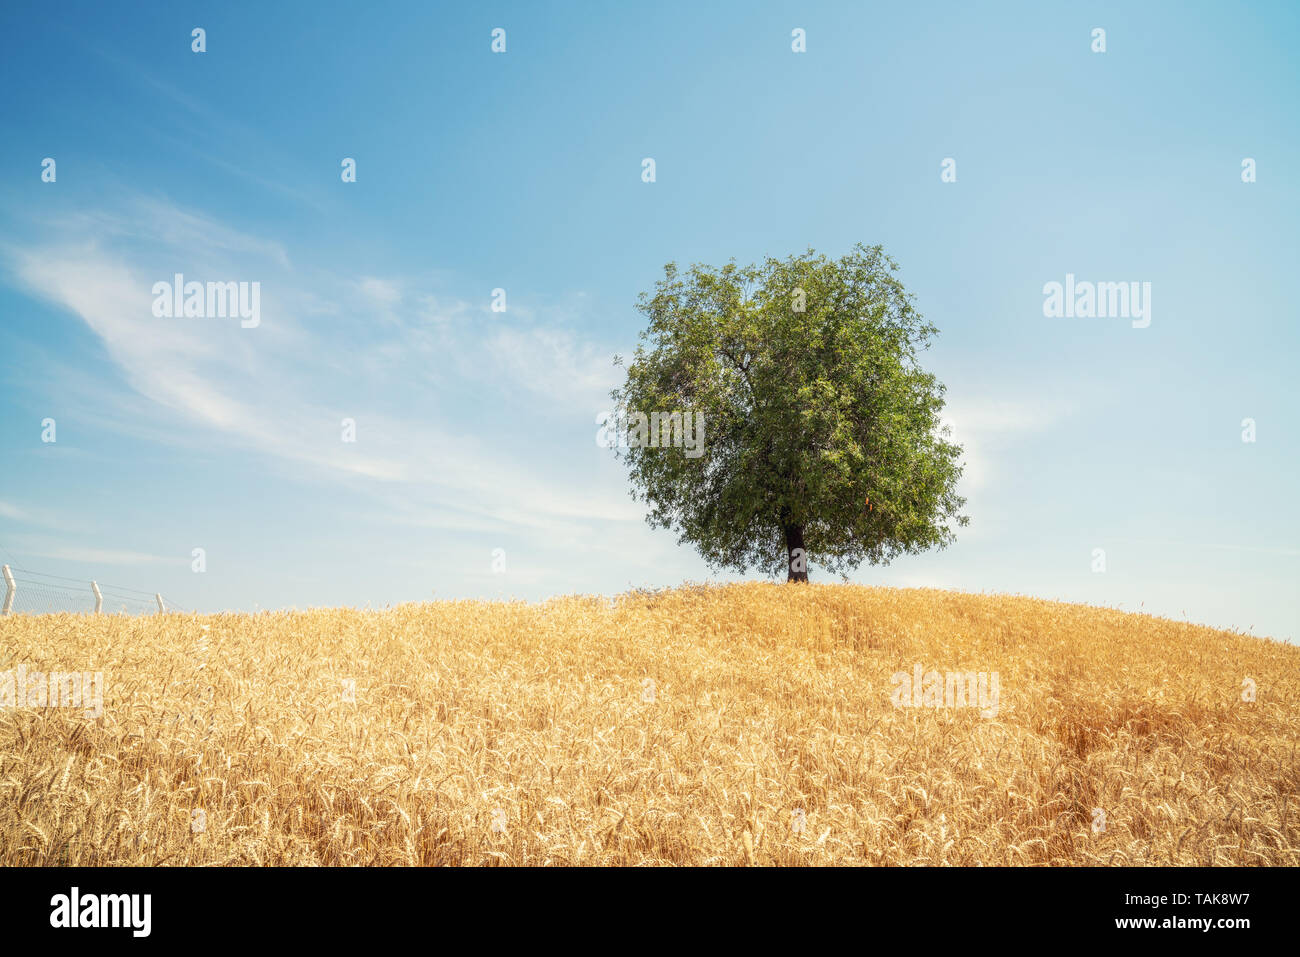 Lonely tree dans le domaine de blé d'or. Paysage d'été avec ciel nuageux Banque D'Images